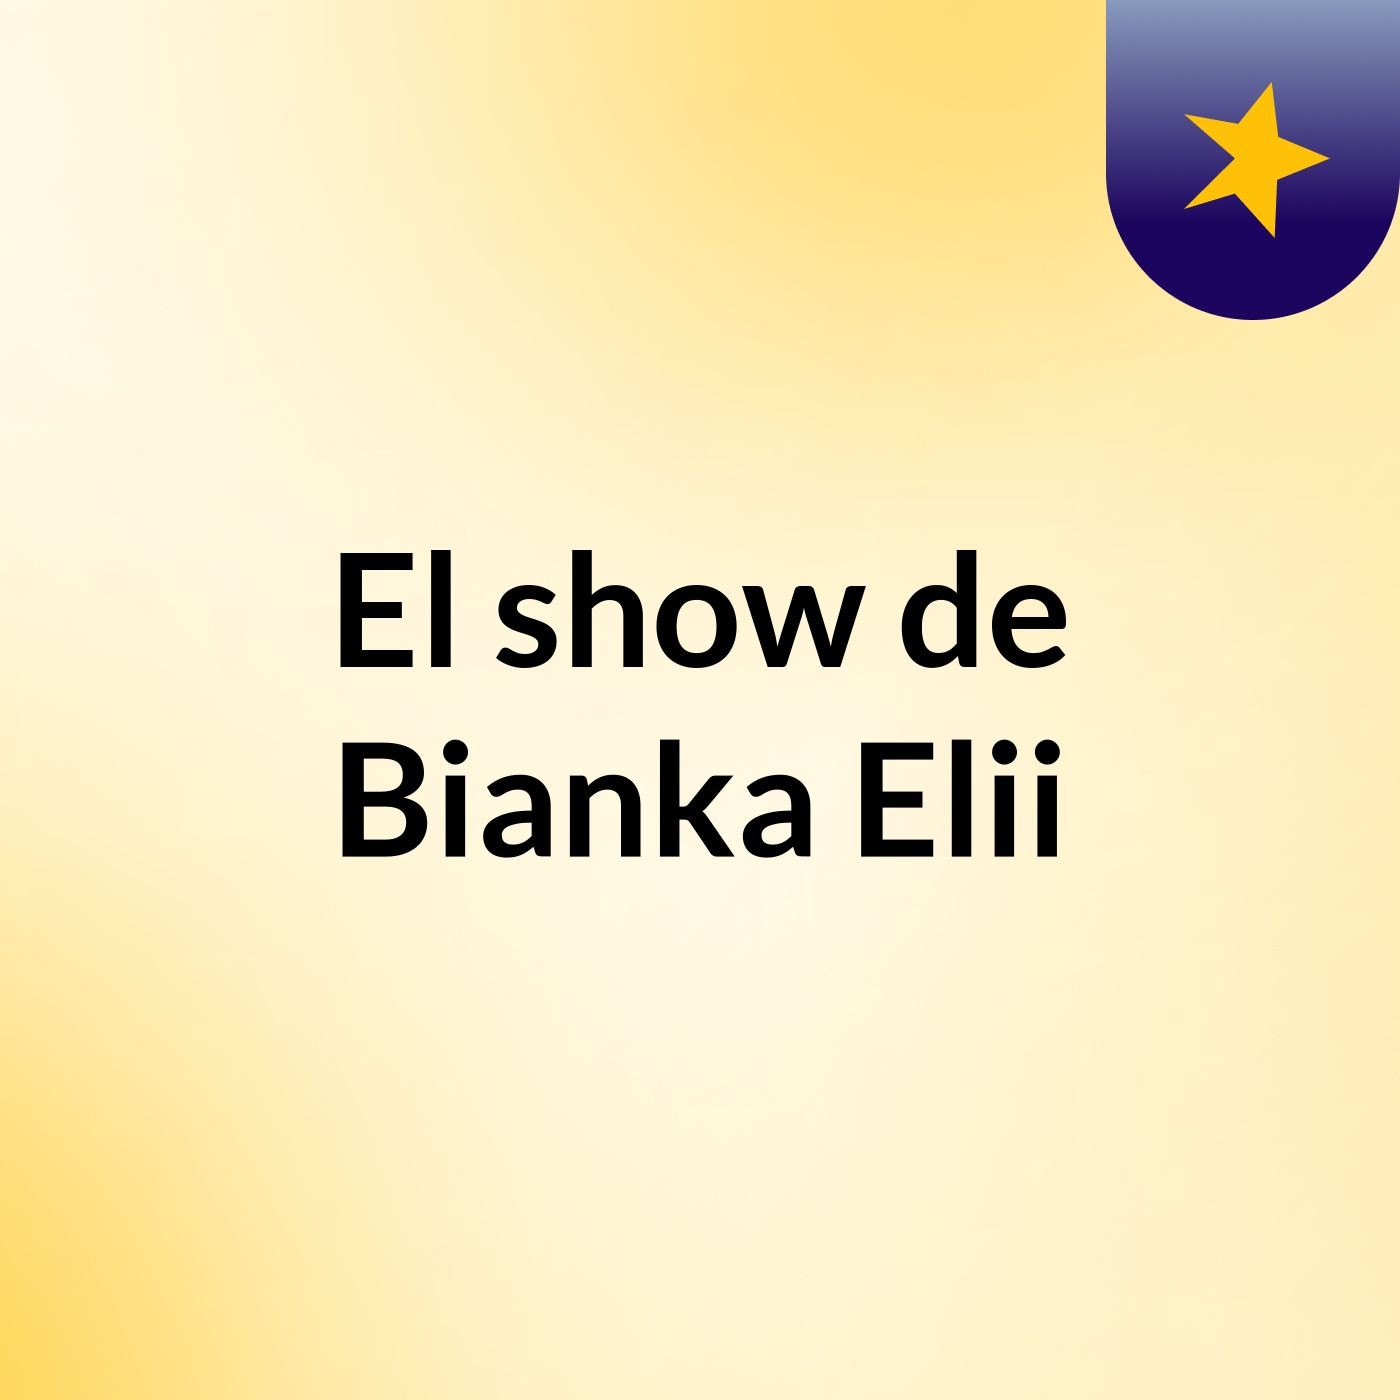 El show de Bianka Elii